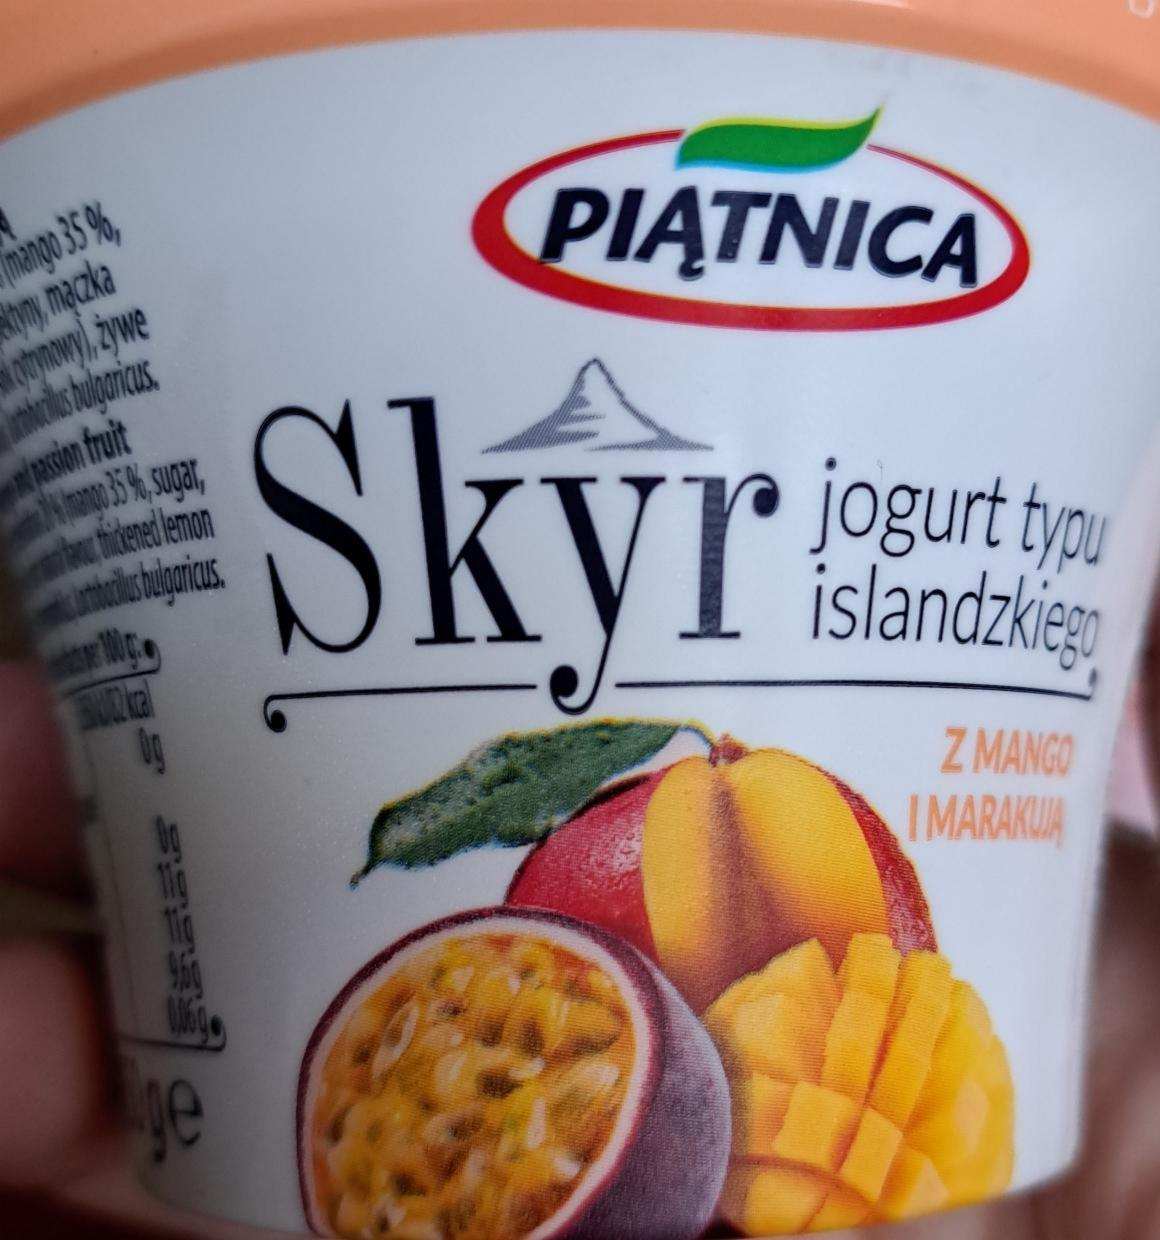 Zdjęcia - Skyr jogurt typu islandzkiego mango marakuja Piątnica